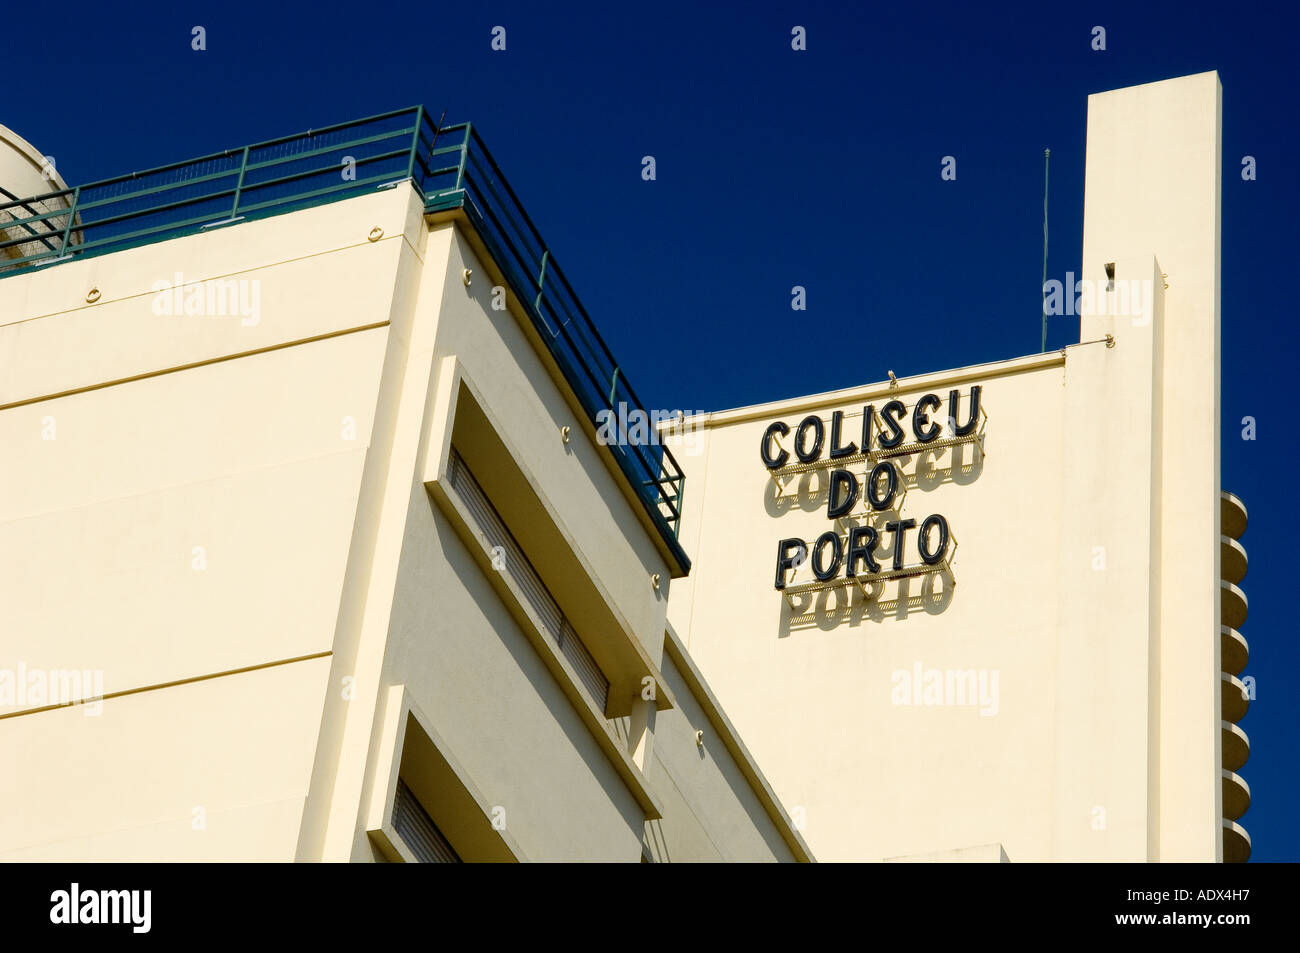 Art Deco building of the Coliseu do Porto theatre in Porto, Portugal Stock Photo